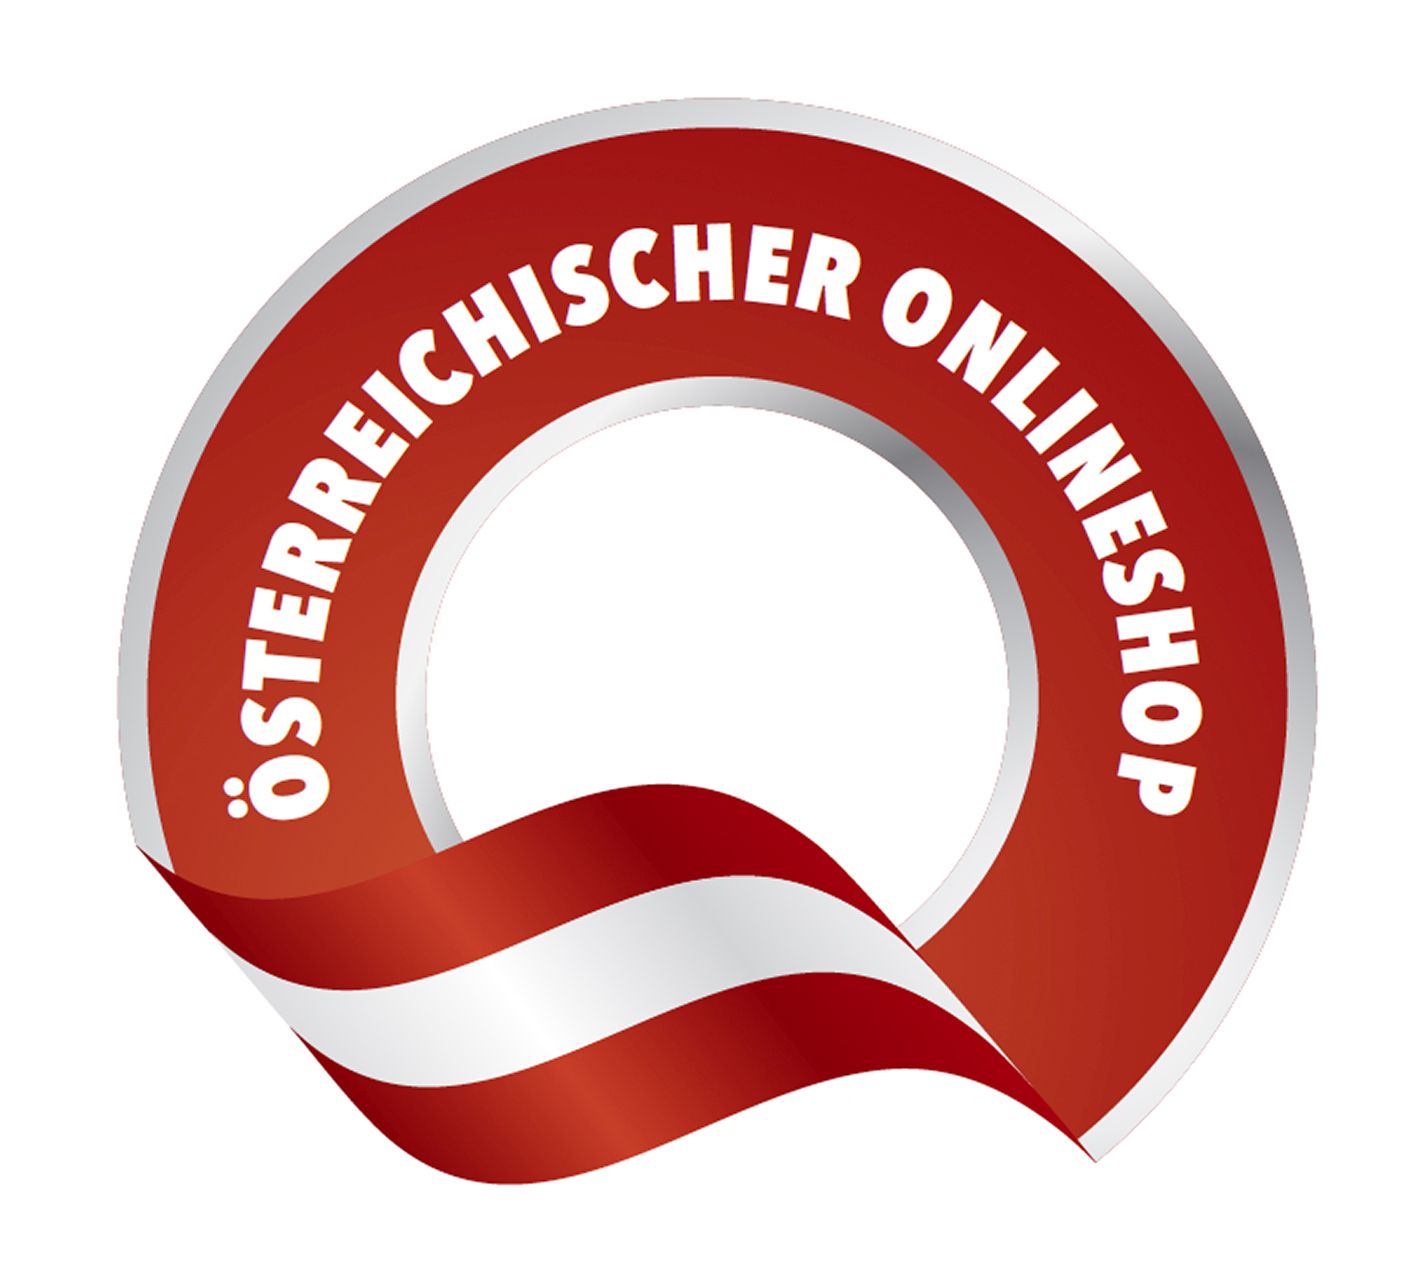 logo-oesterreichischer-onlineshop_.jpg